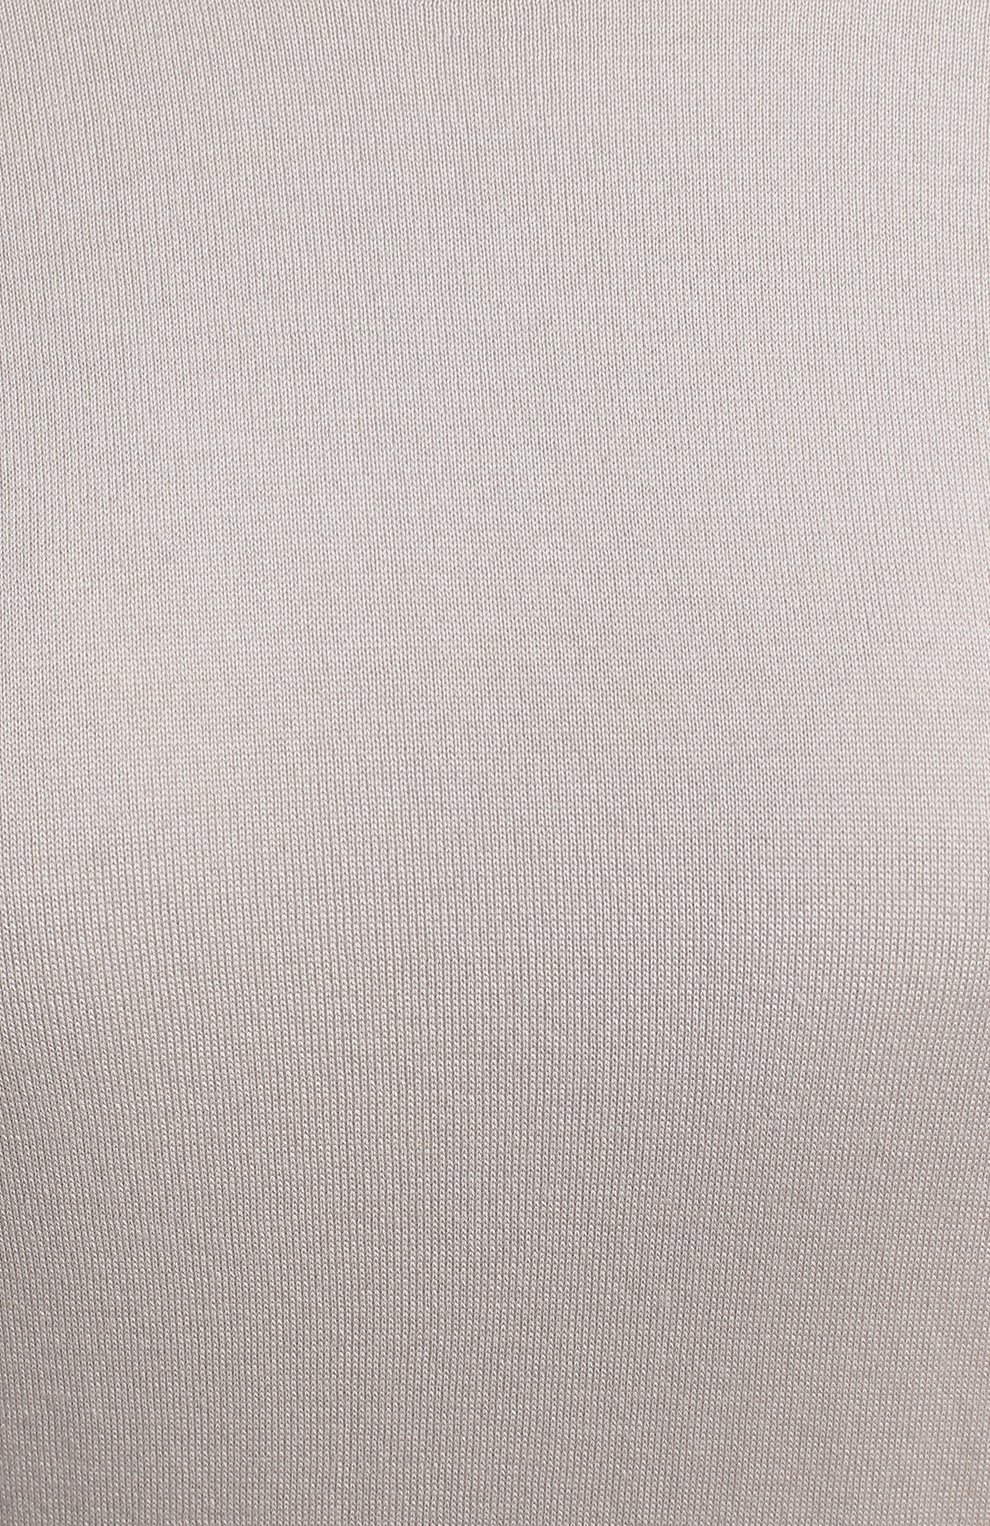 Пуловер из шелка и хлопка | Loro Piana | Серый - 3